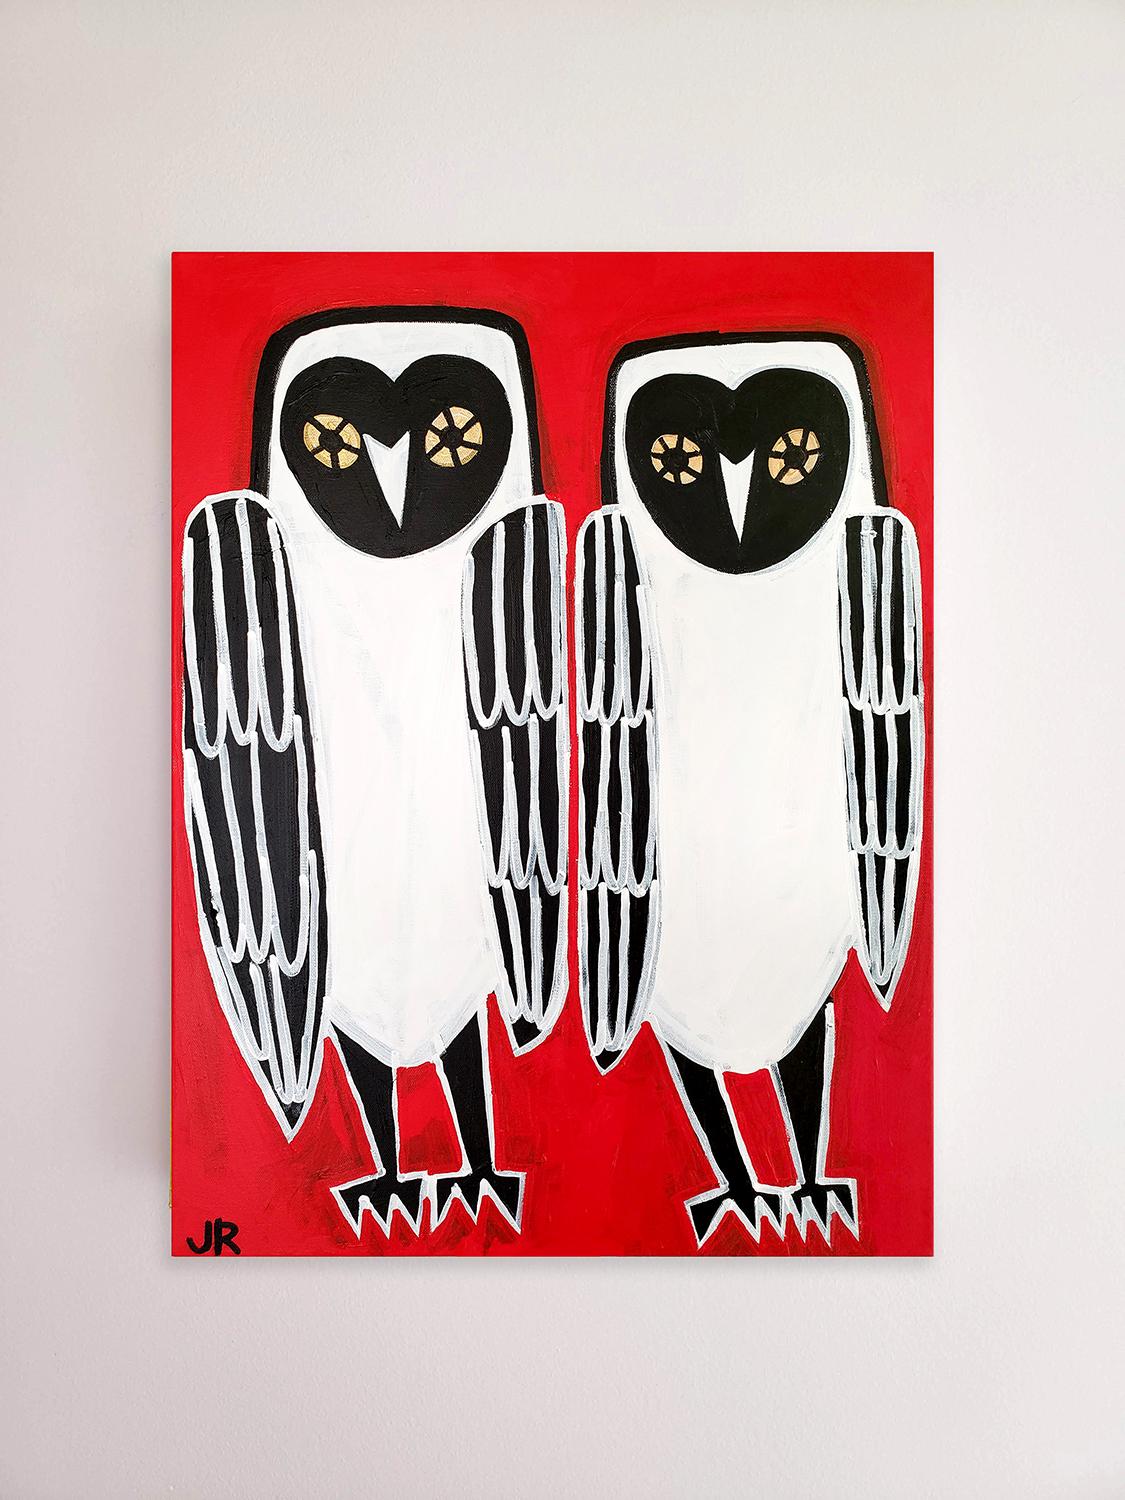 <p>Kommentare des Künstlers<br>Die Künstlerin Jessica JH Roller stellt zwei geheimnisvolle Schleiereulen vor einem auffallend roten Hintergrund dar. Die großäugigen Vögel leben friedlich in einem Eulenhaus tief im Wald. Mit den kühnen Linien und dem